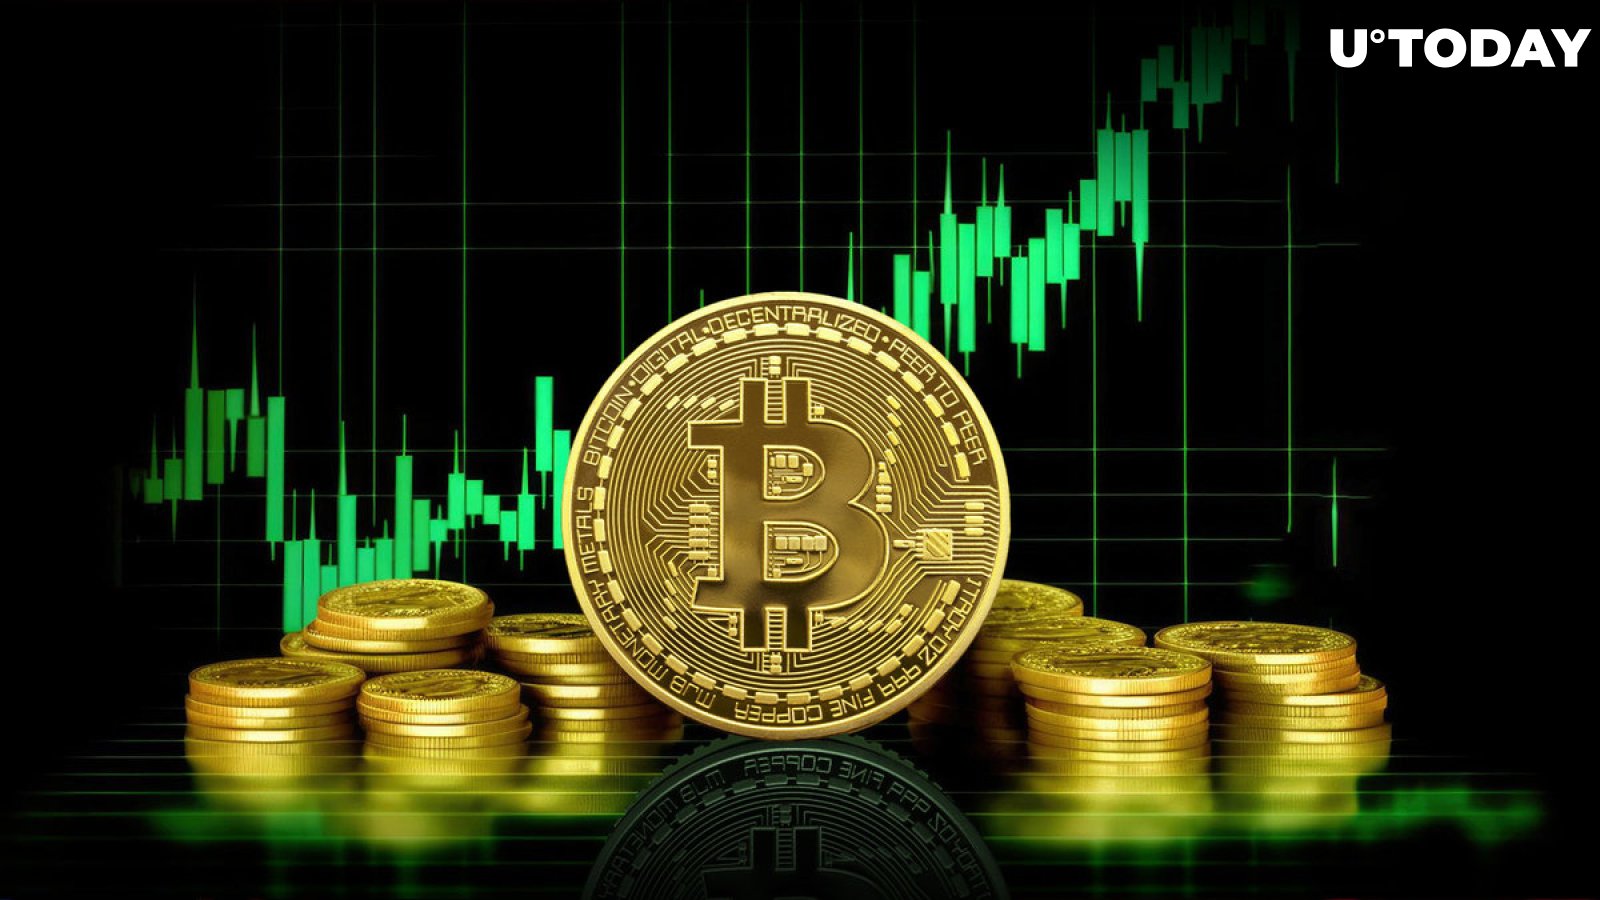 Bitcoin Präis klëmmt op $ 74,000 Virausgesot vum Händler Bob Lukas, No dëser Metrik